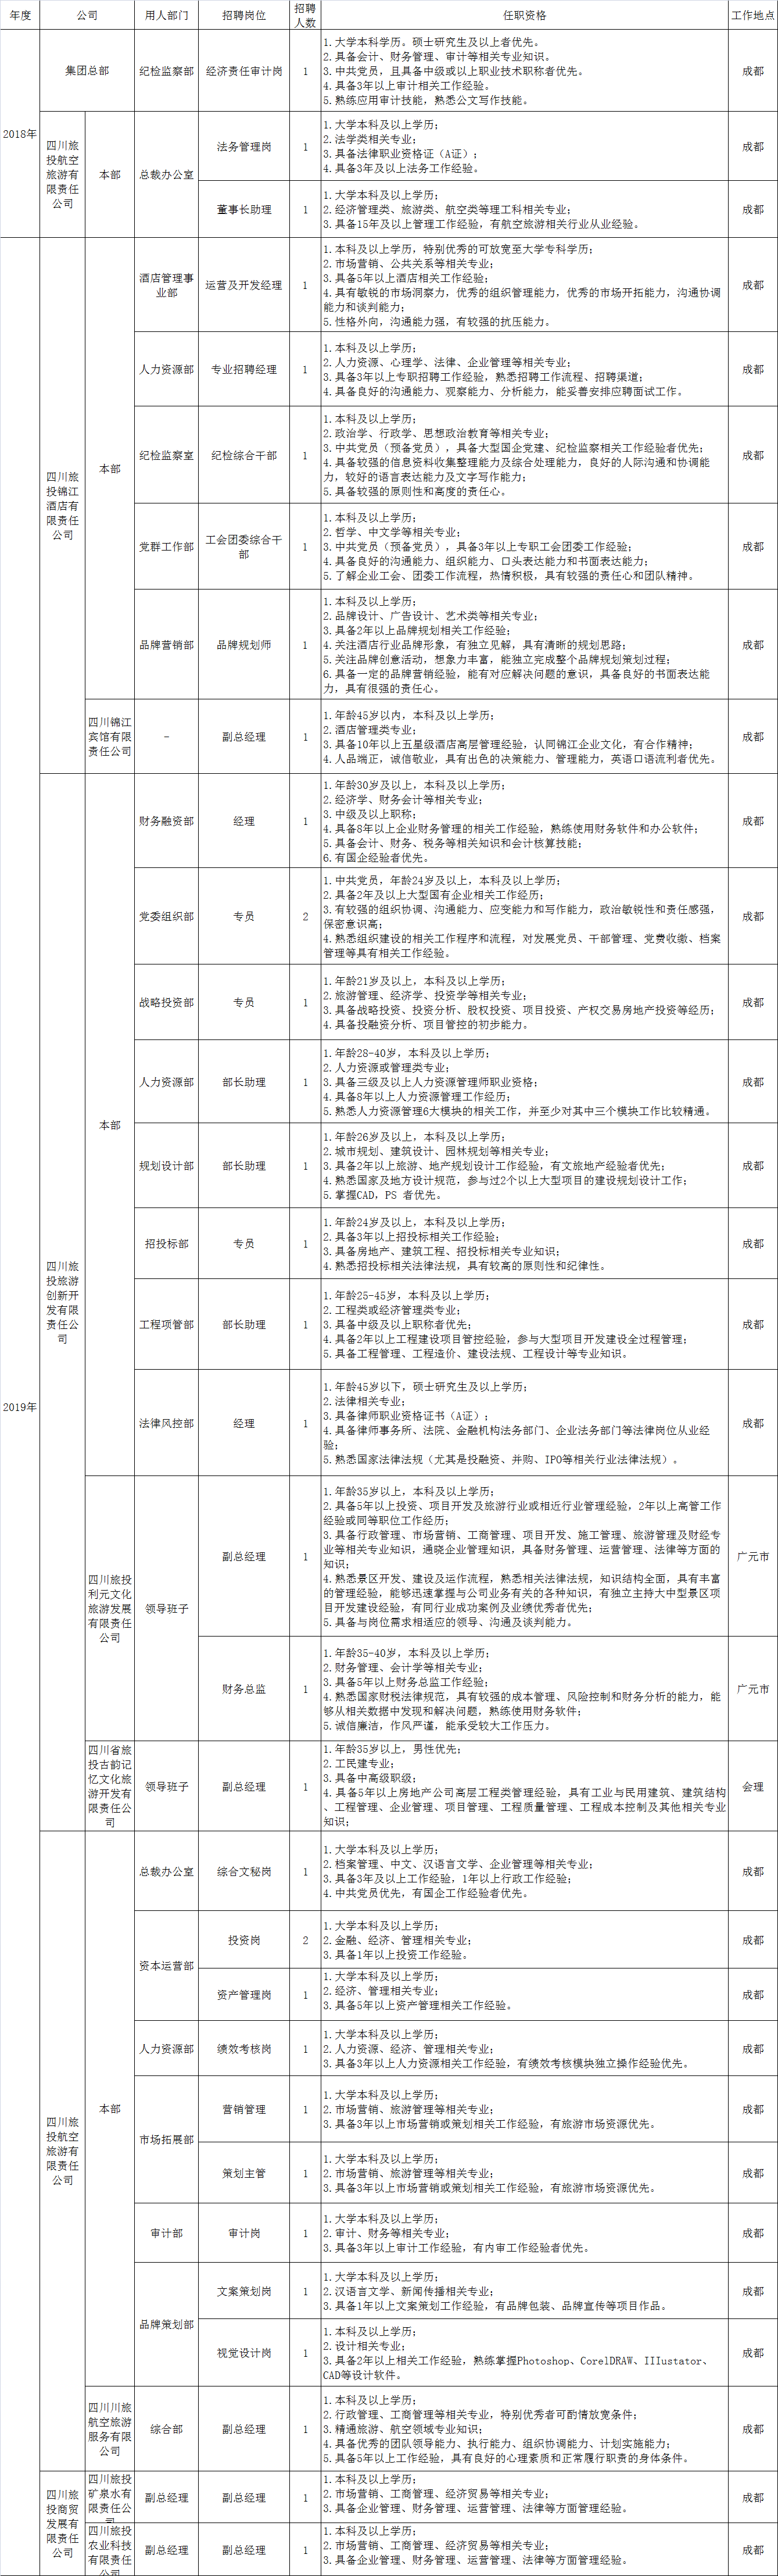 四川省旅游投资集团有限责任公司招聘情况统计表